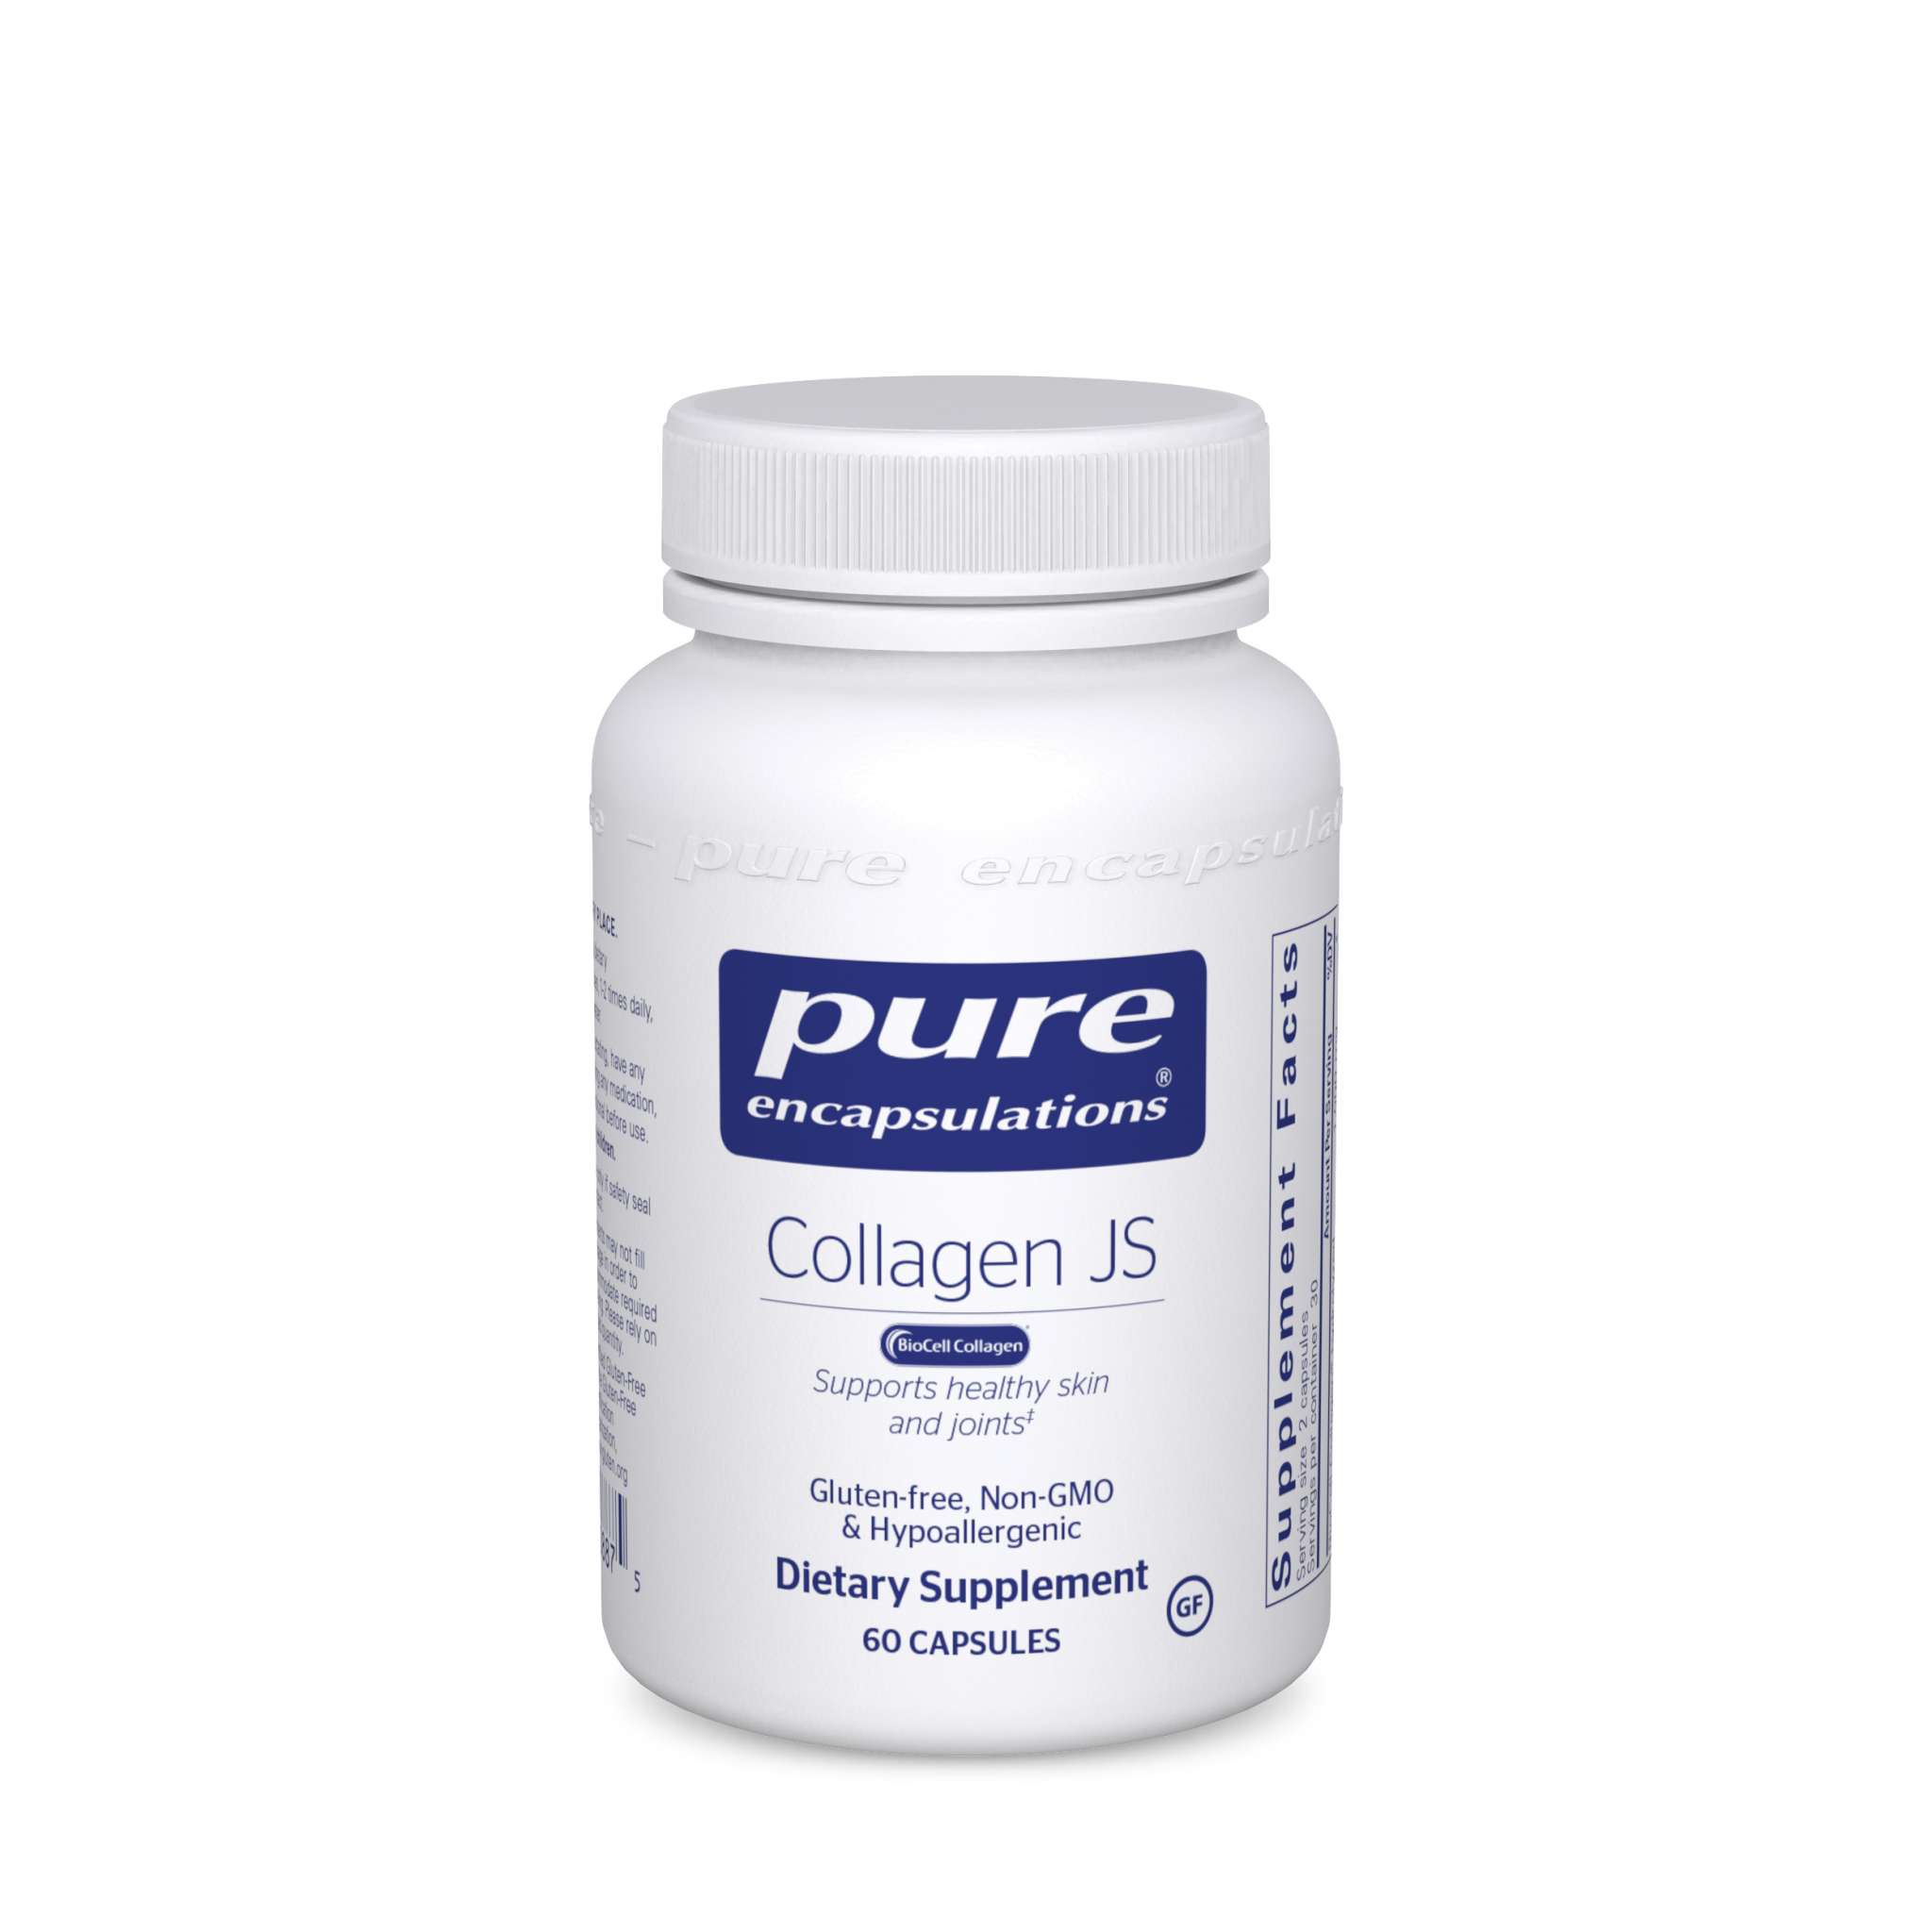 Pure Encapsulations - Collagen Js